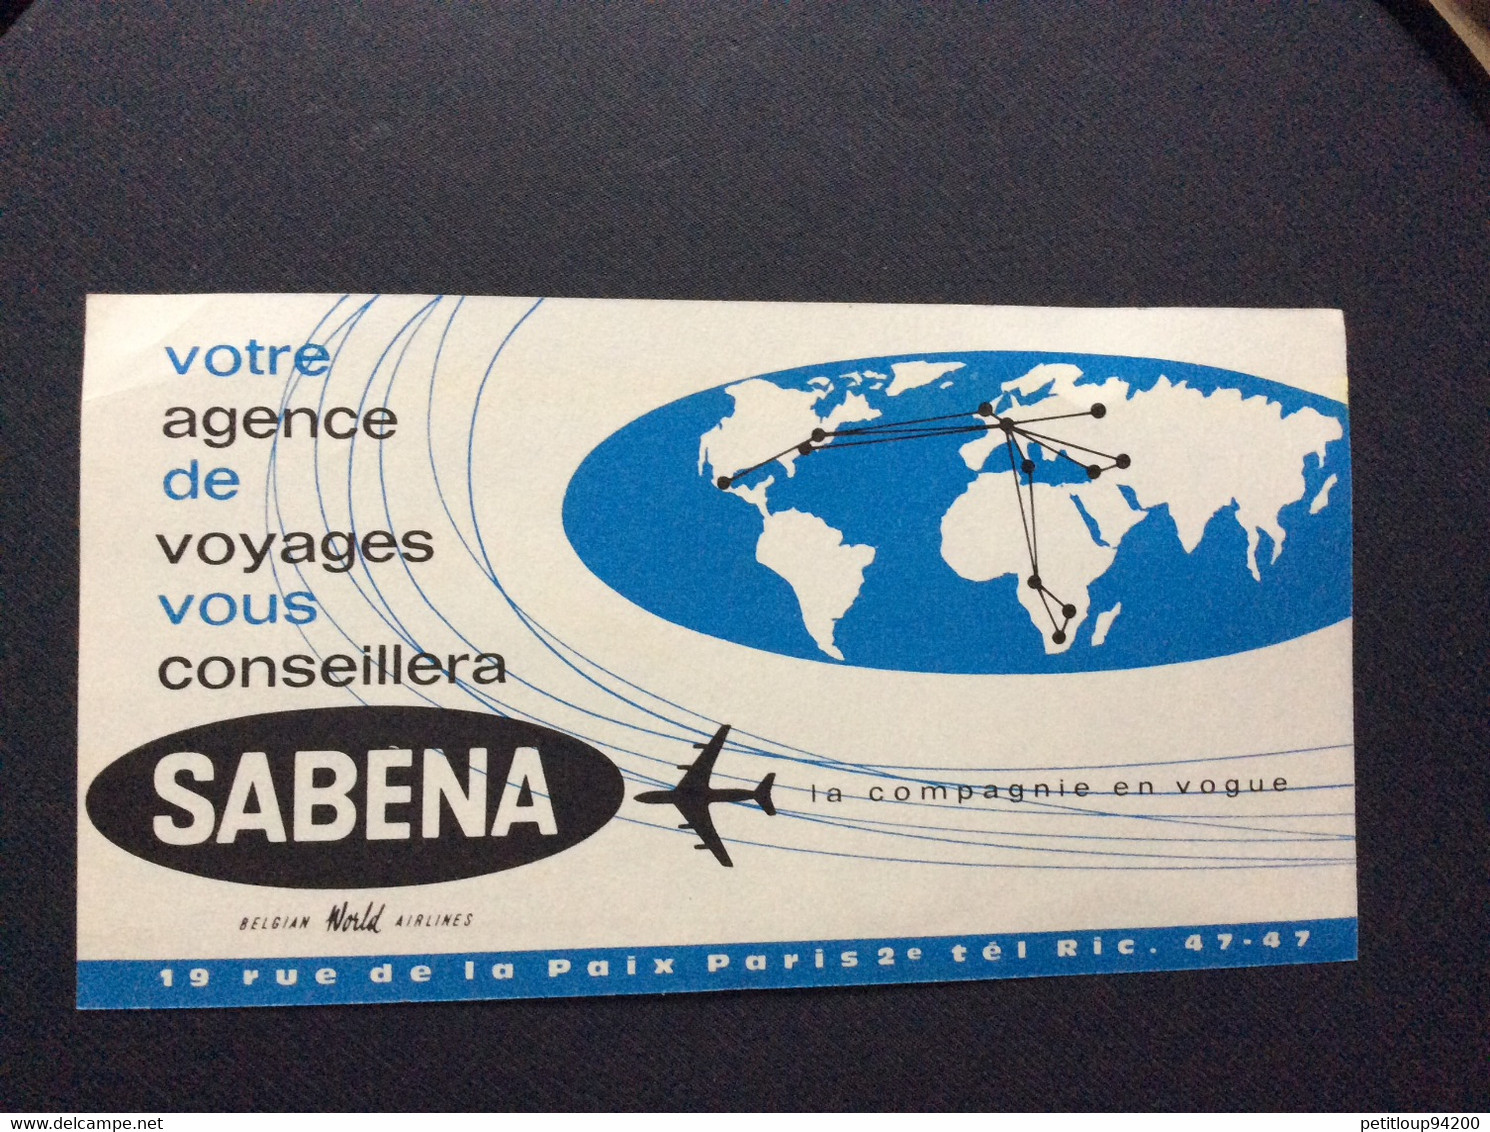 SABENA  Publicite  BILLET DE PASSAGE ET BULLETIN DE BAGAGES  PASSENGER TICKET AND BAGGAGE CHECK  1961 1962 - Advertenties